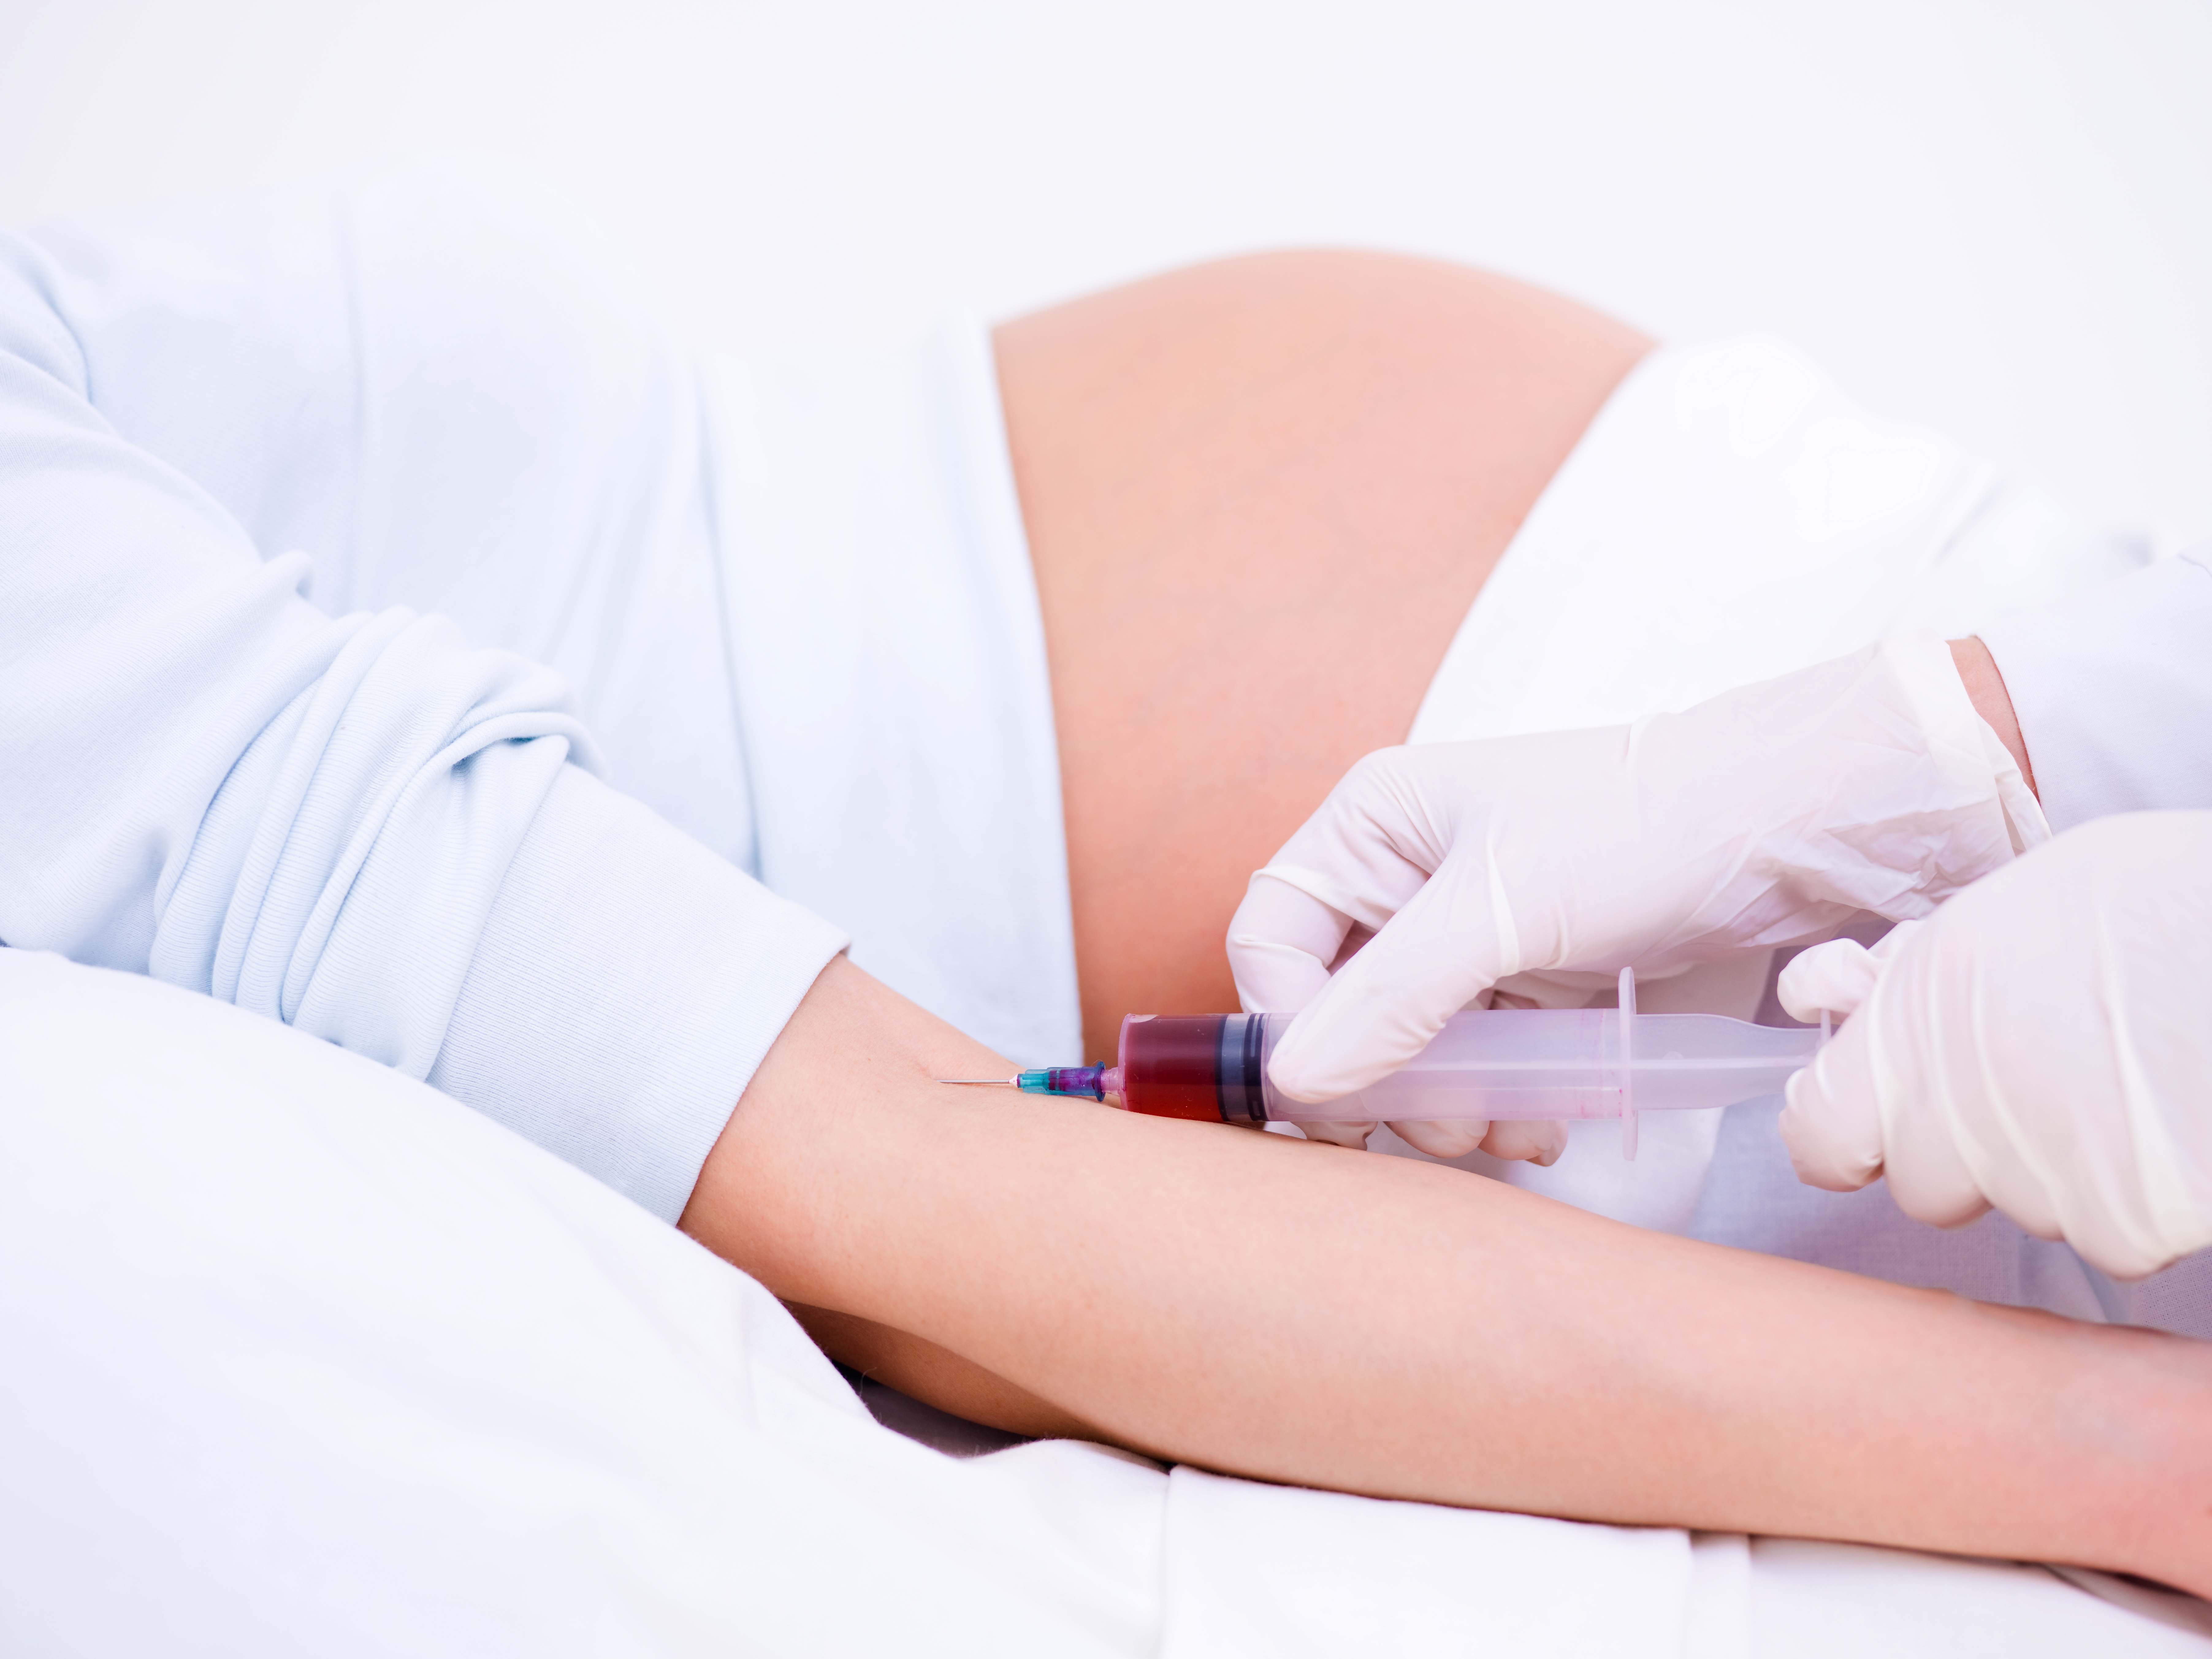 Le placenta chez les femmes enceintes infectées présente, en général, un niveau d'activité immunitaire beaucoup plus élevé que chez des femmes enceintes non infectées (Visuel Adobe Stock 19728620).